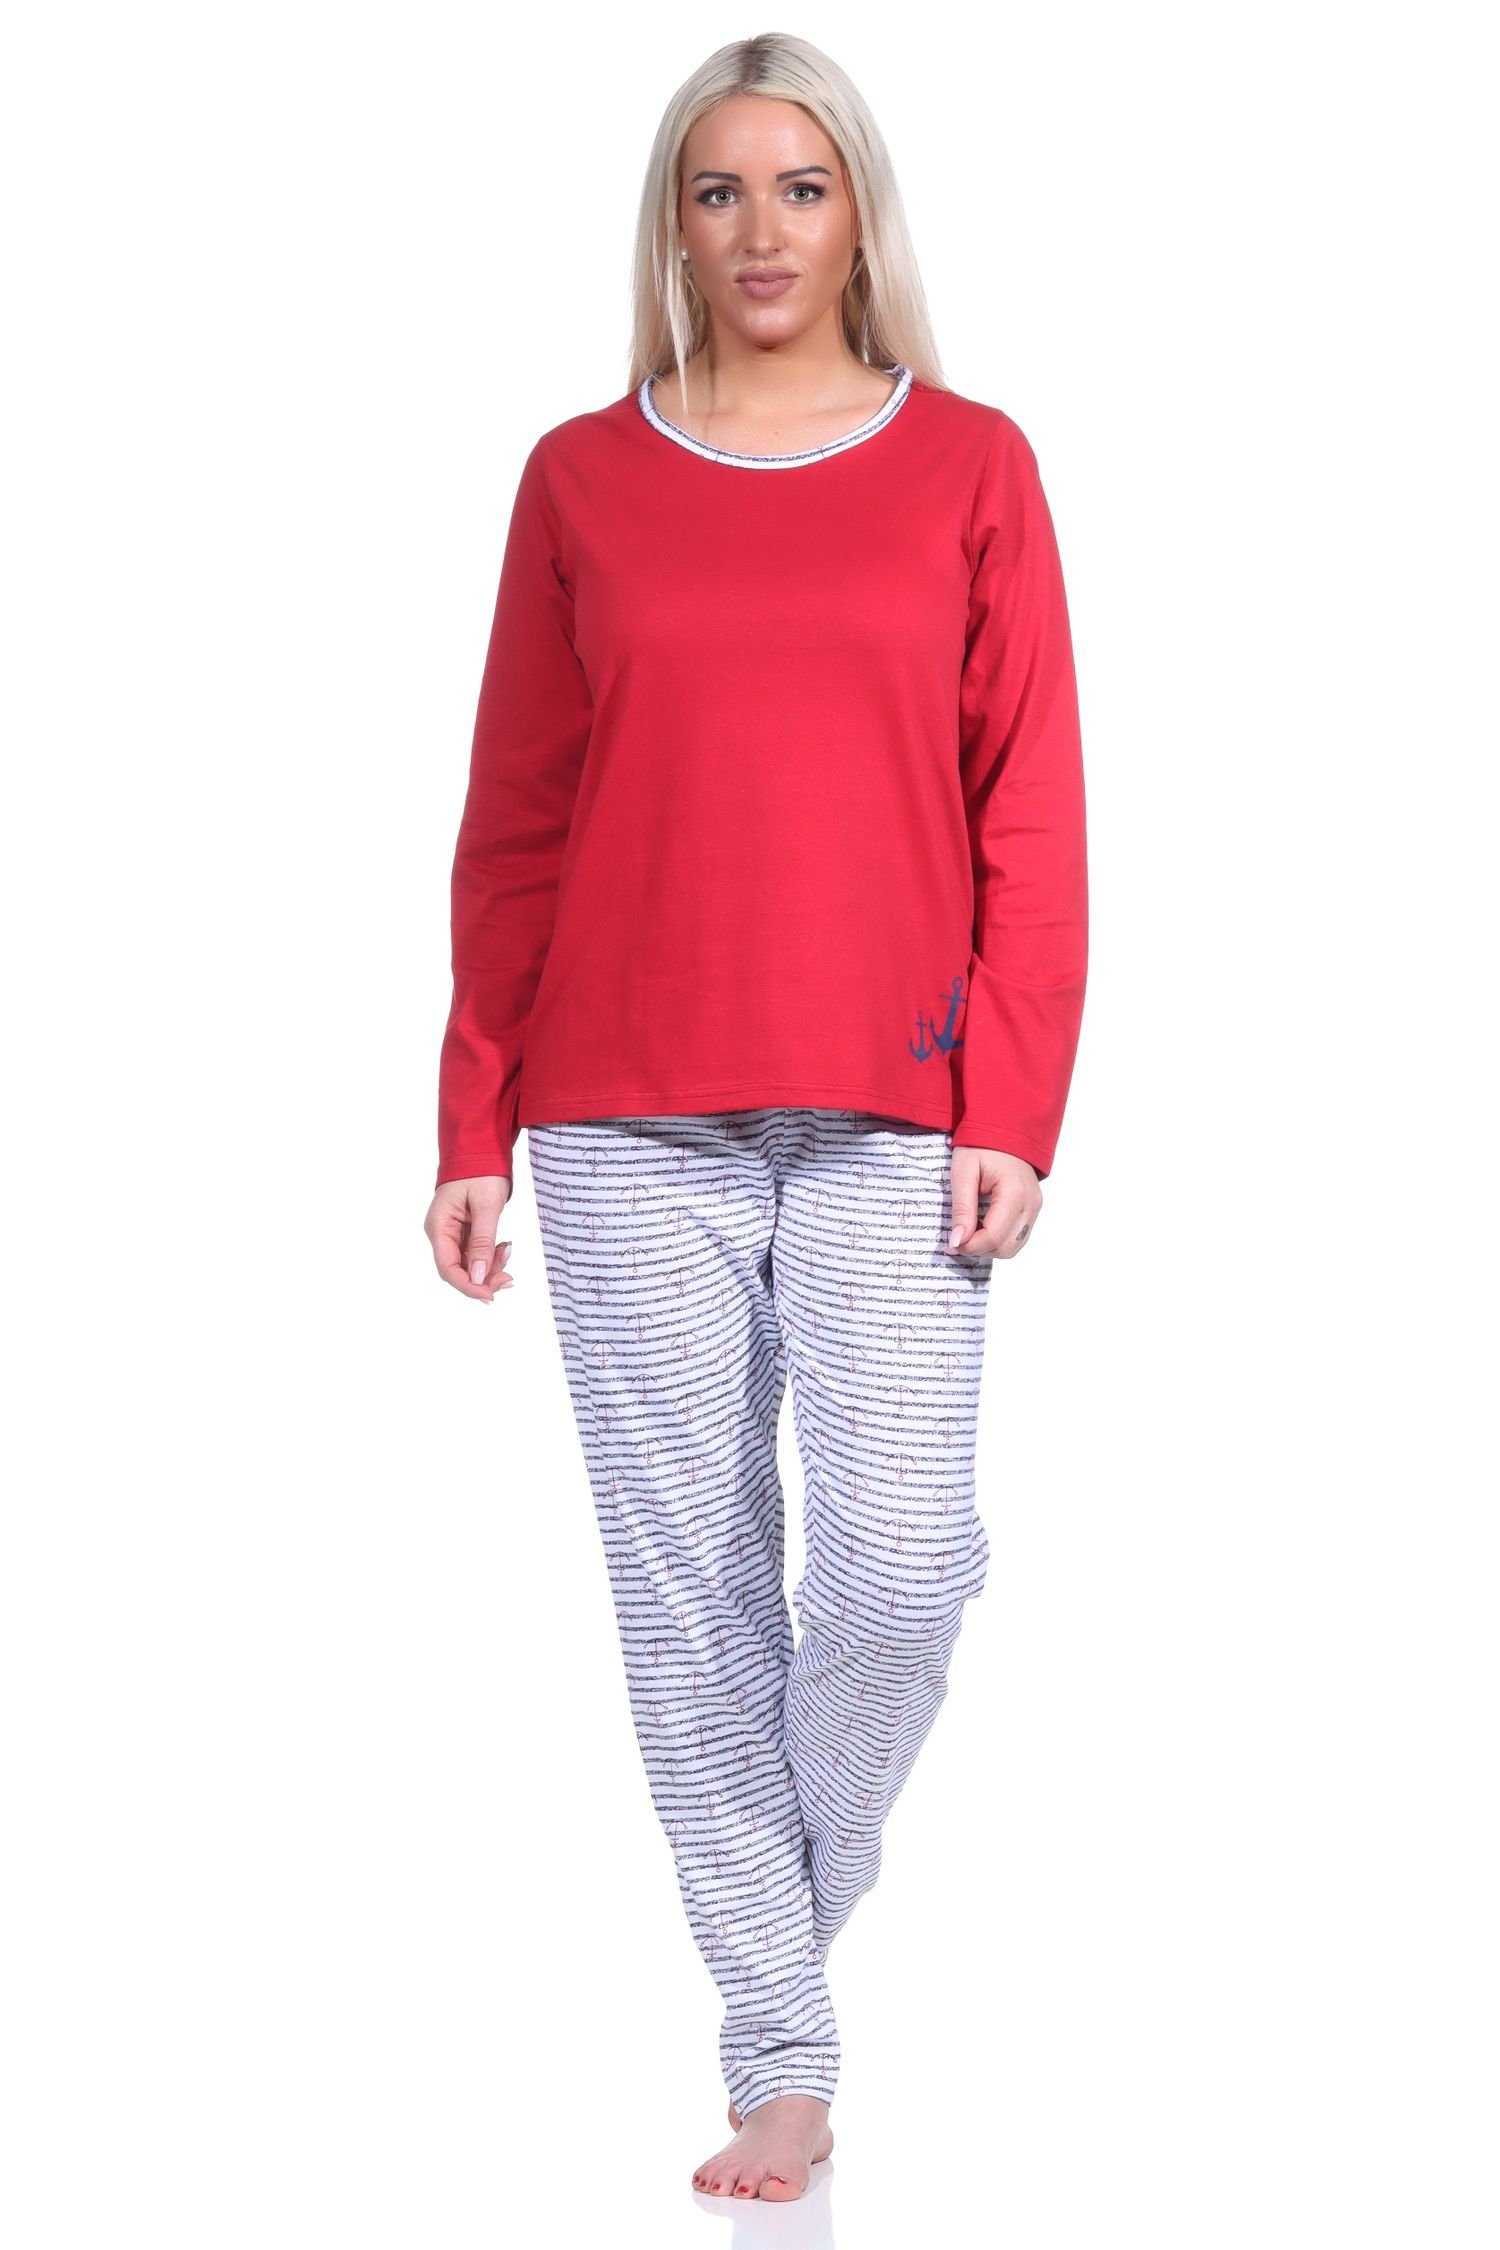 Normann Pyjama Damen Pyjama, langer Schlafanzug in Streifen Optik MARITIM rot